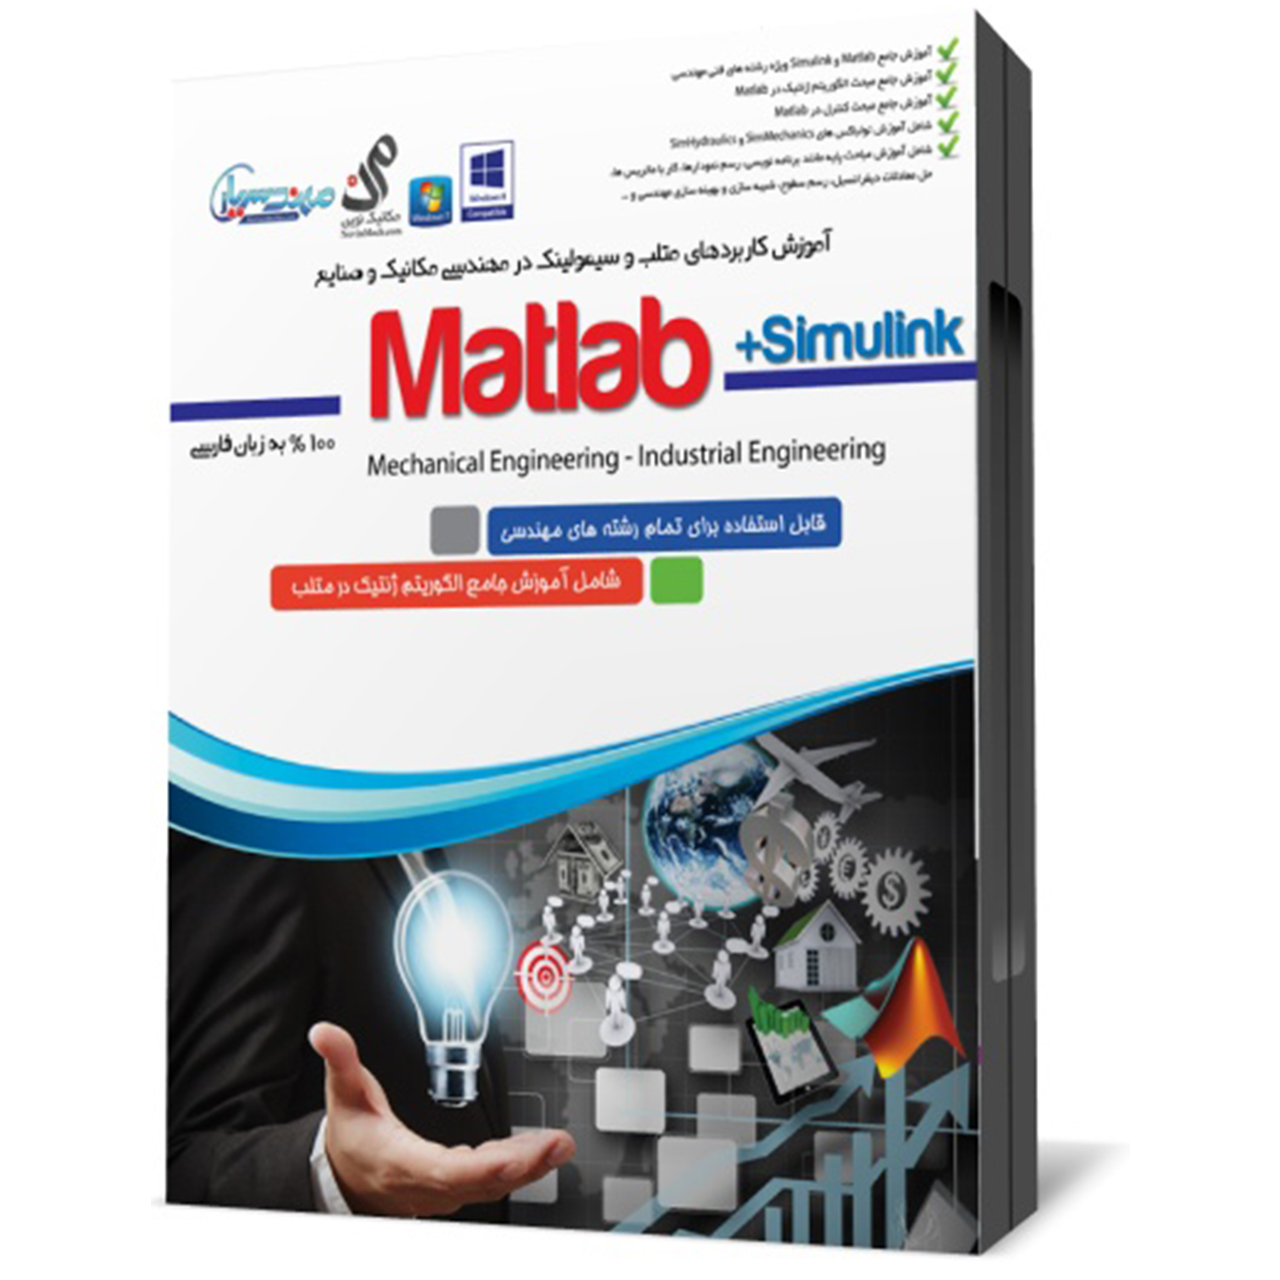 مجموعه آموزشی نرم افزار Matlab ویژه مهندسی مکانیک و صنایع نشر مهندس یار